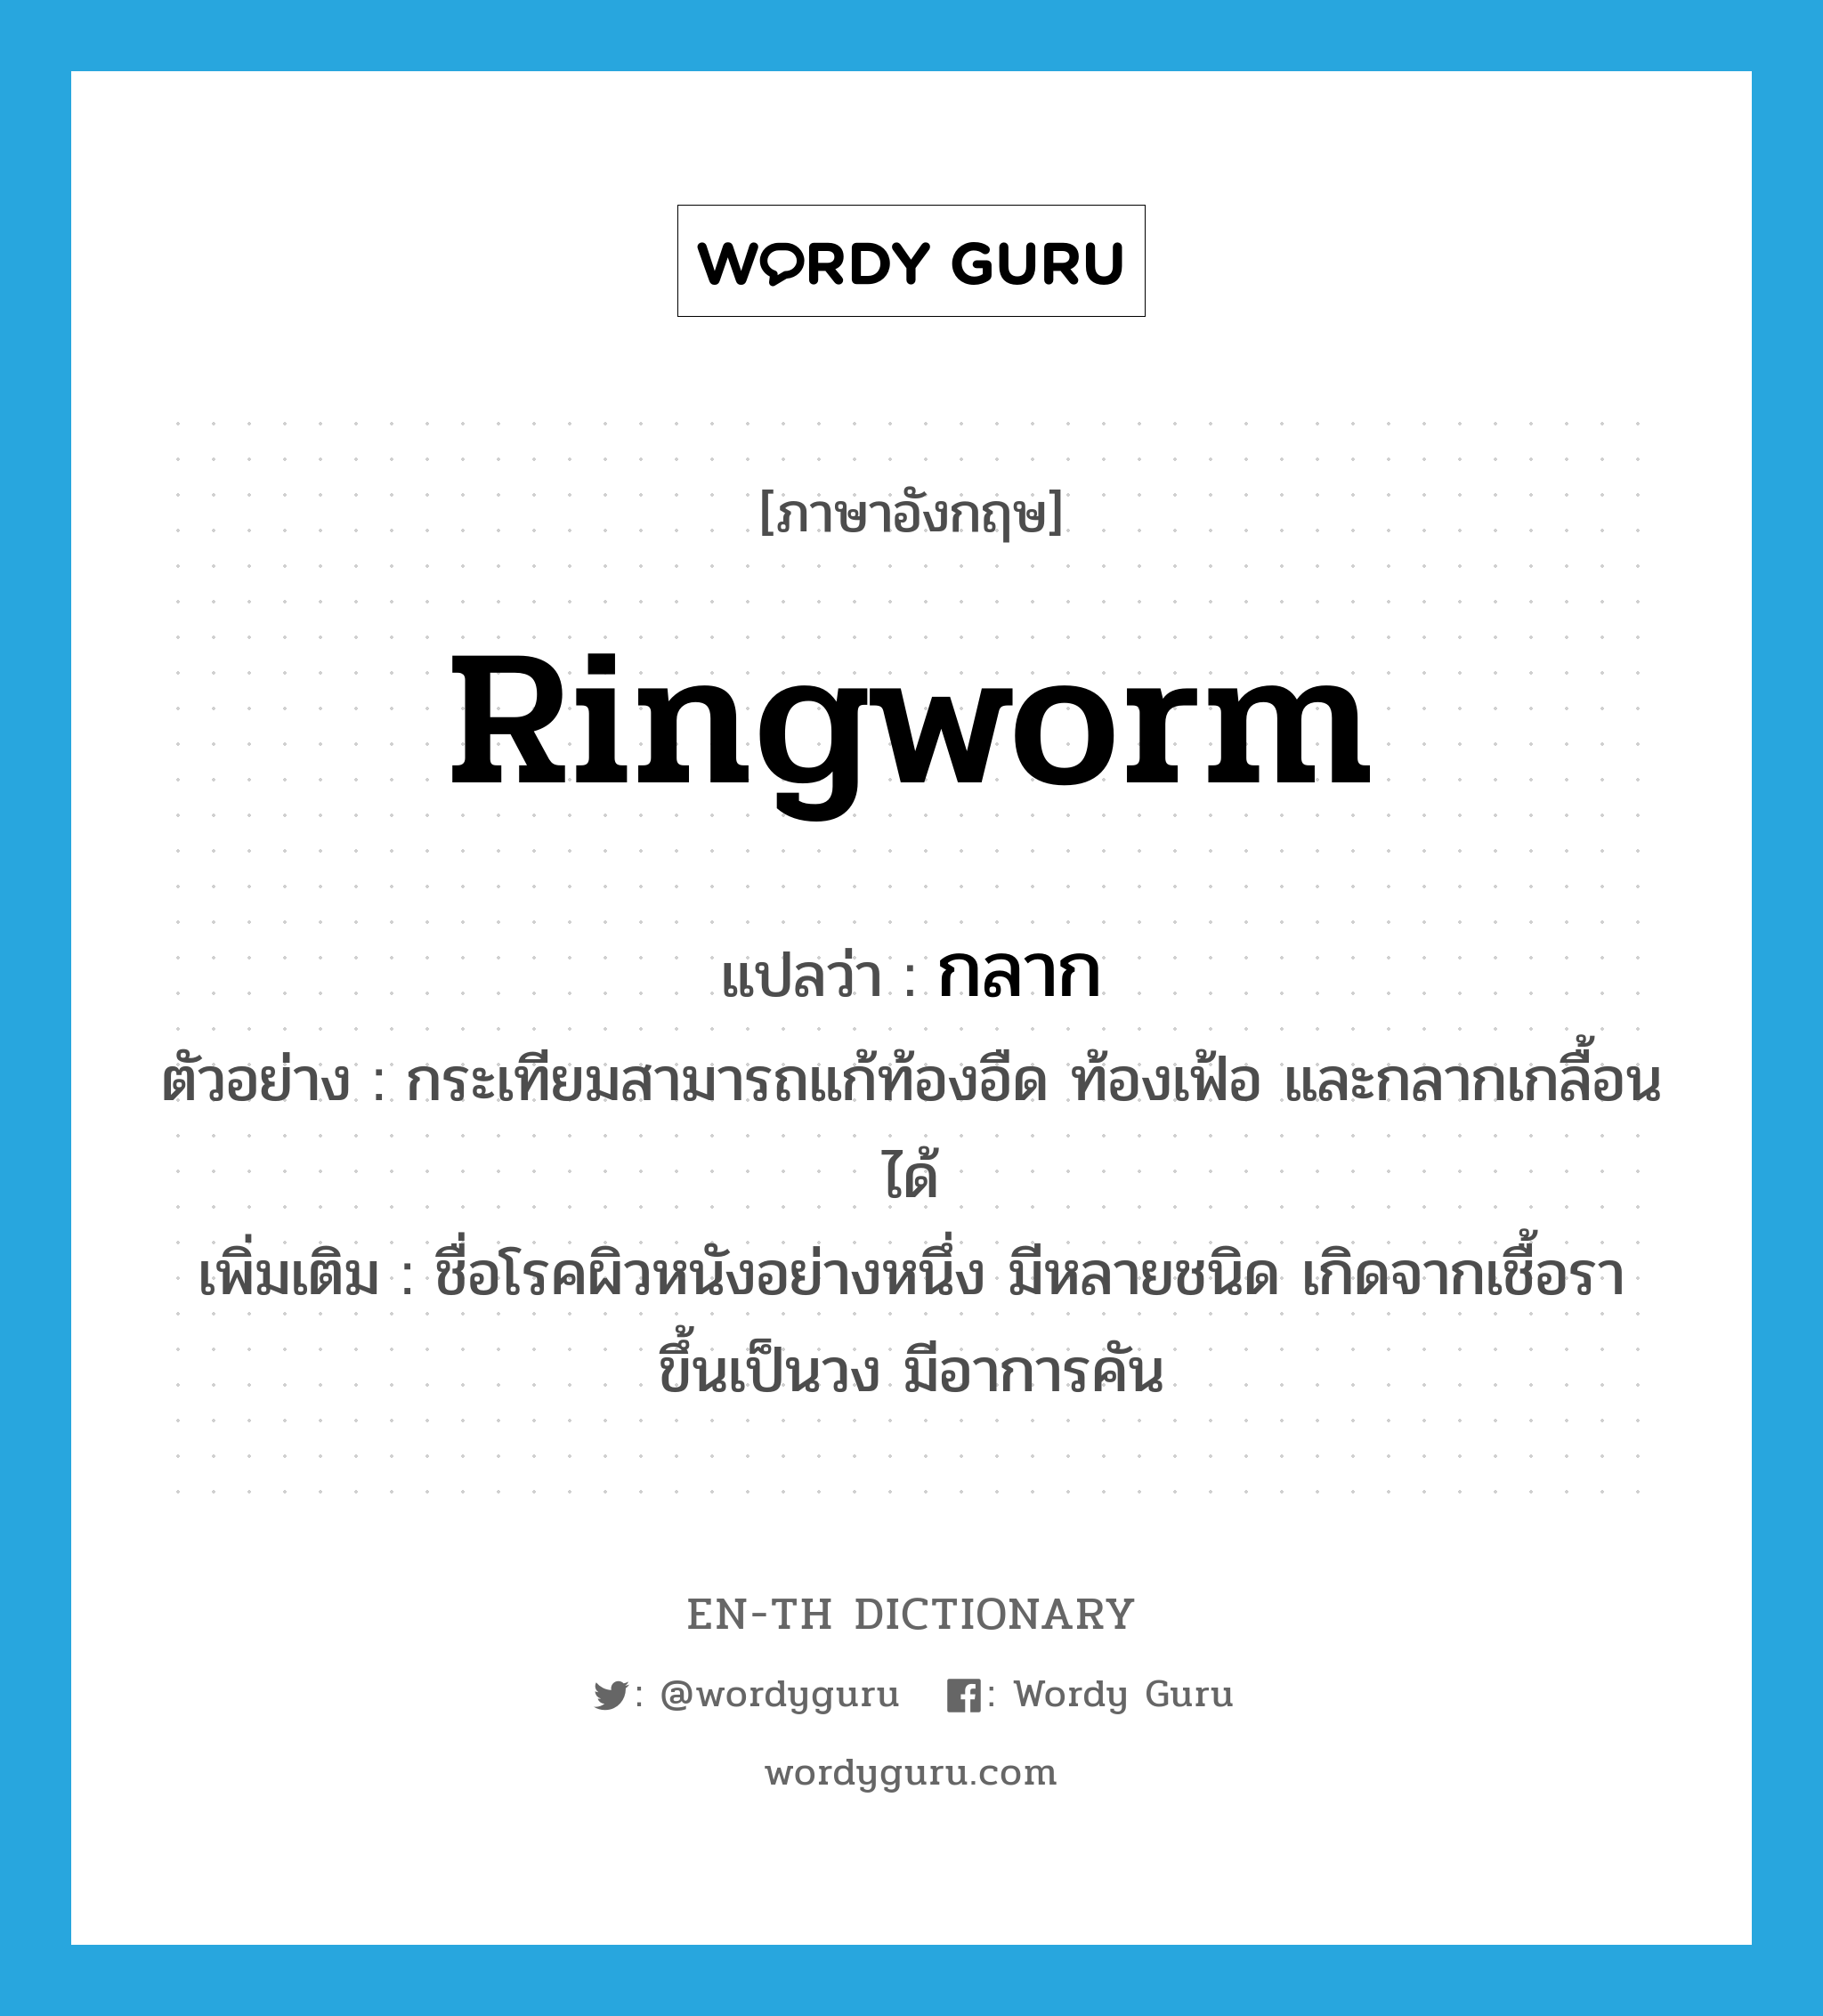 ringworm แปลว่า?, คำศัพท์ภาษาอังกฤษ ringworm แปลว่า กลาก ประเภท N ตัวอย่าง กระเทียมสามารถแก้ท้องอืด ท้องเฟ้อ และกลากเกลื้อนได้ เพิ่มเติม ชื่อโรคผิวหนังอย่างหนึ่ง มีหลายชนิด เกิดจากเชื้อรา ขึ้นเป็นวง มีอาการคัน หมวด N